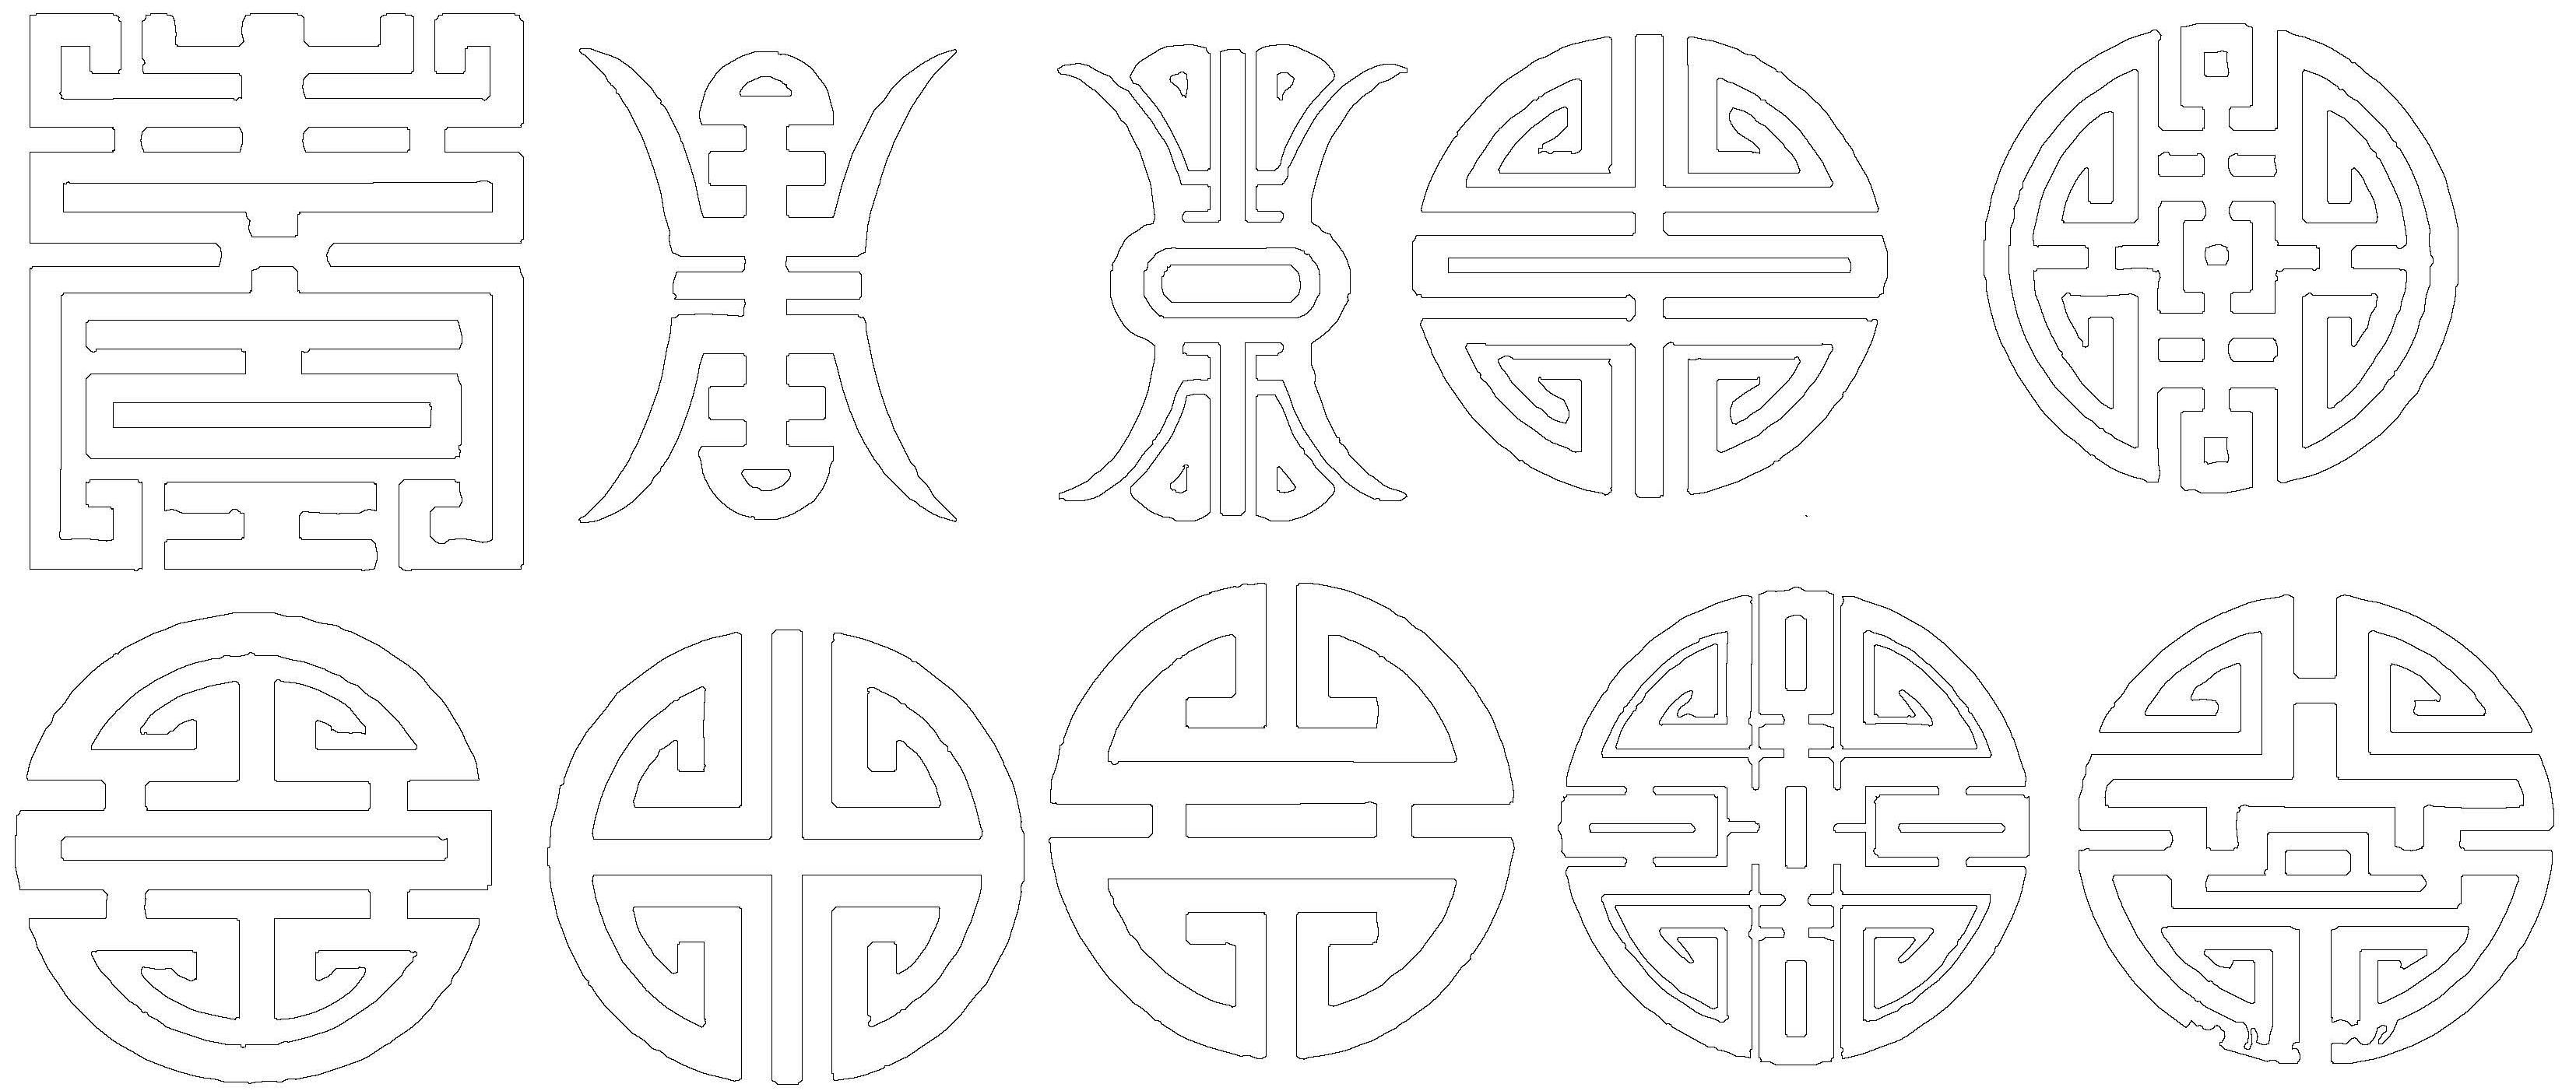 中式雕花纹样▲ 常见节点既然cad图库有这么大作用,那这里小编就为